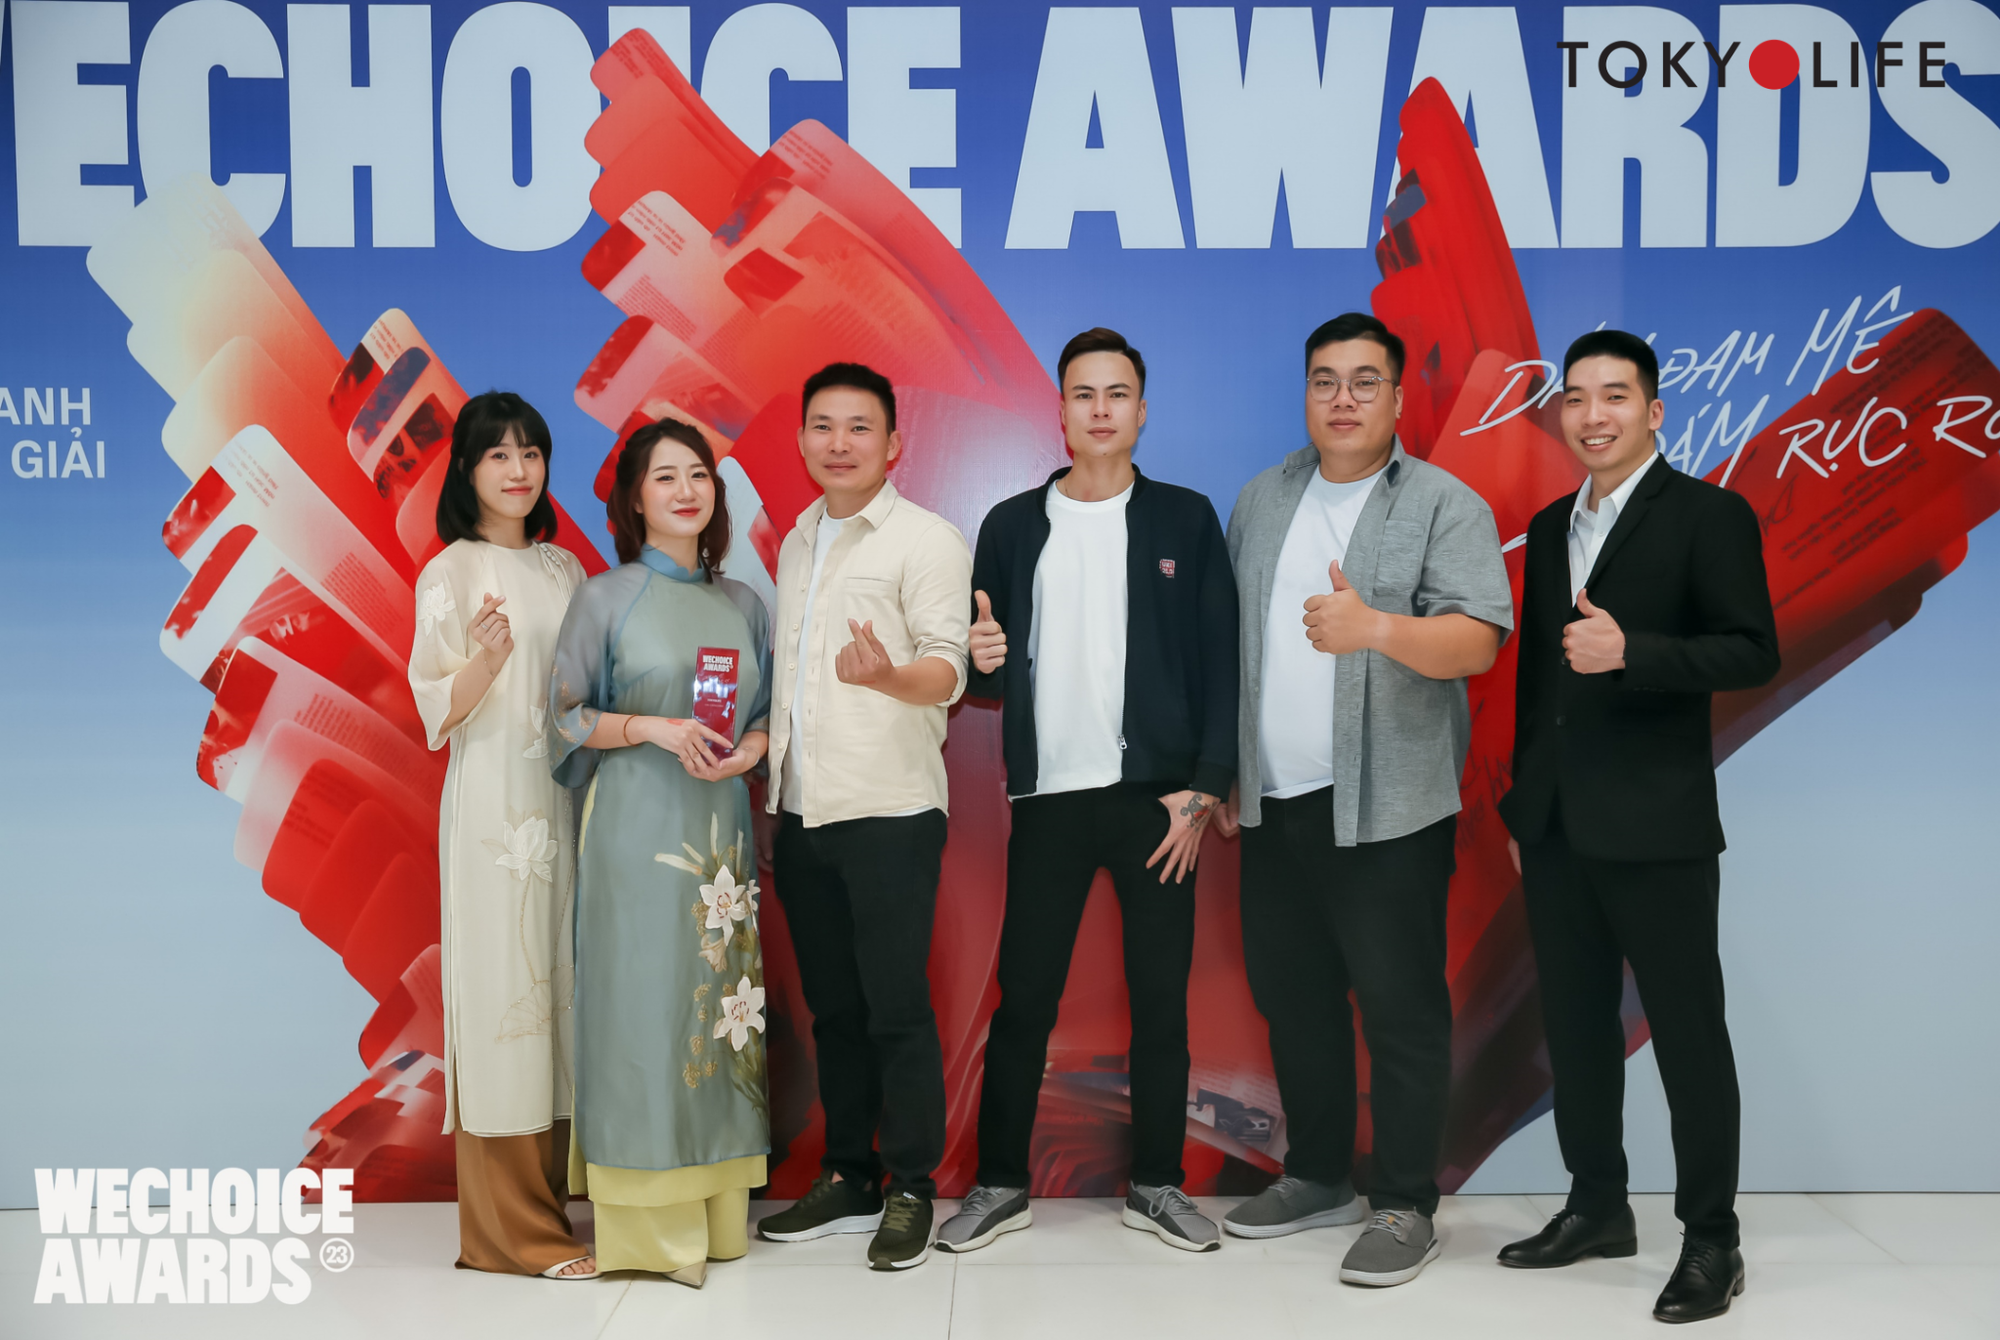 TokyoLife đồng hành cùng WeChoice Awards: Mọi hành động tử tế đều cần được tôn vinh và lan tỏa - Ảnh 1.